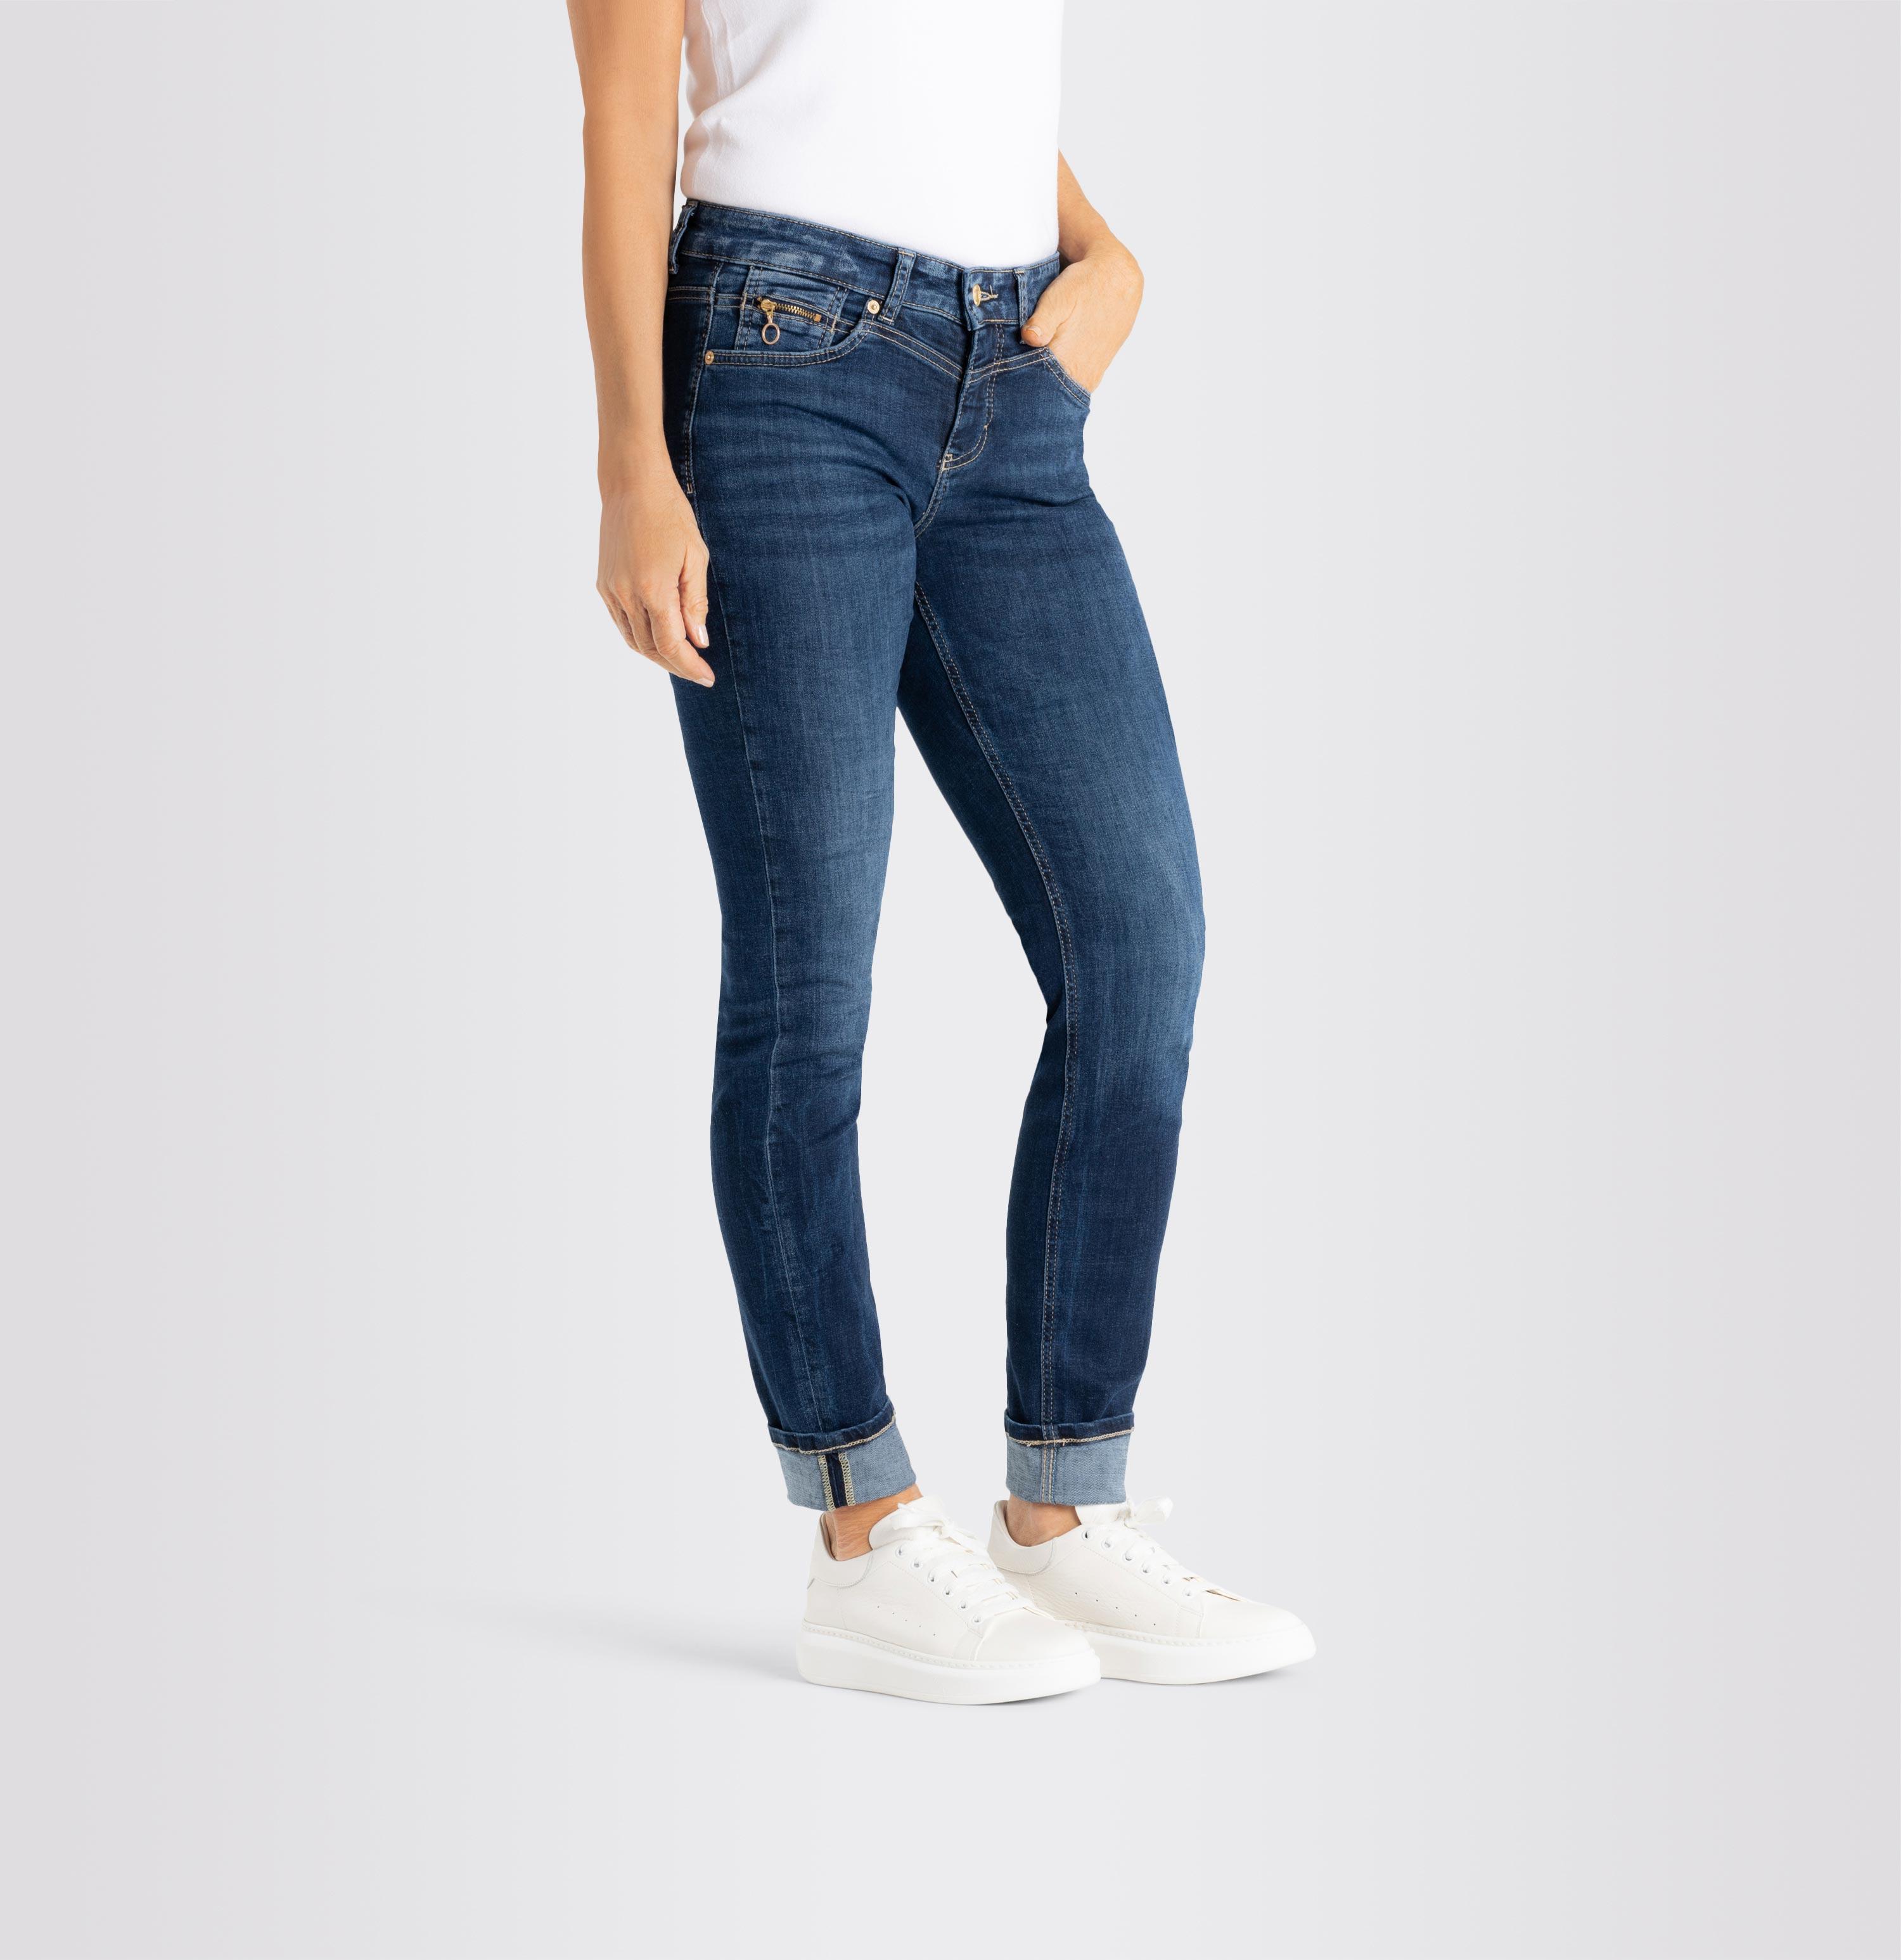 Damenhose, Rich Slim, Light Authentic, dunkelblau Jeans | D671 MAC Shop